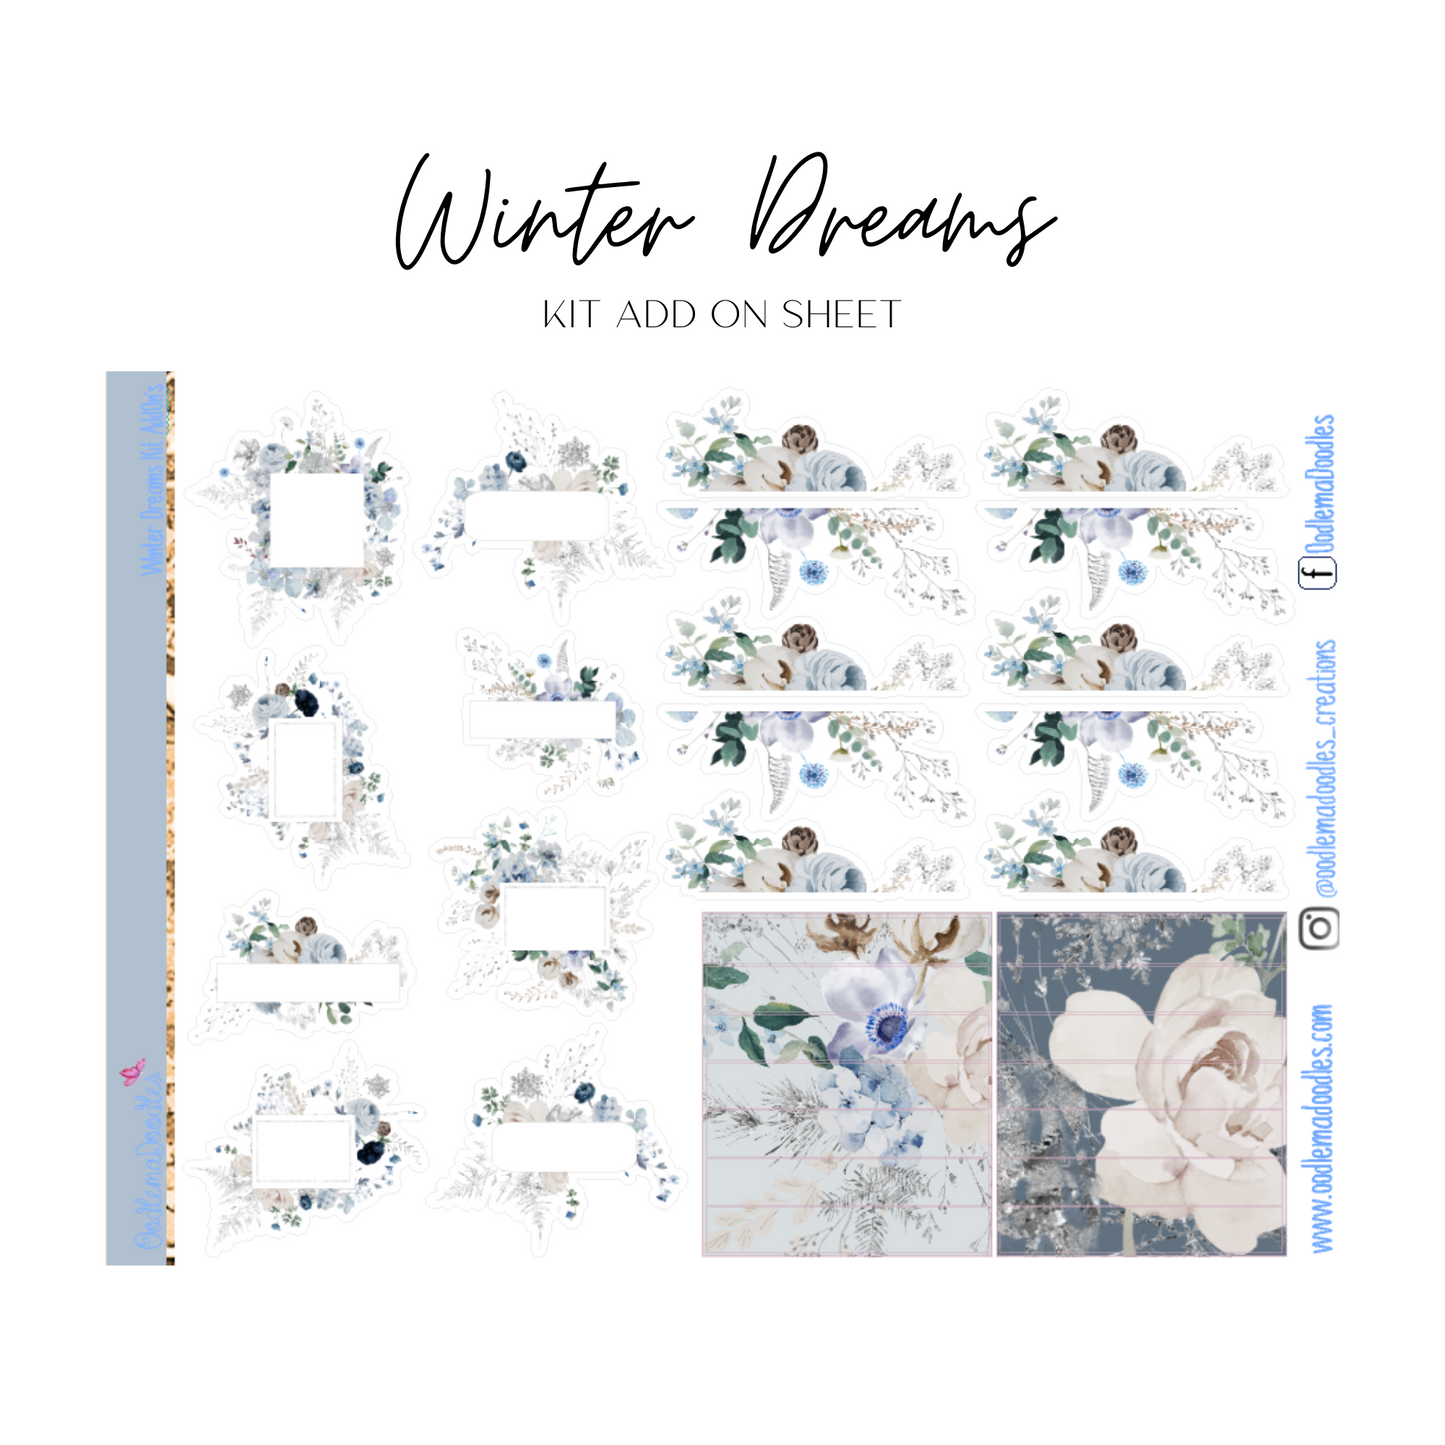 Winter Dreams Addon Sheet